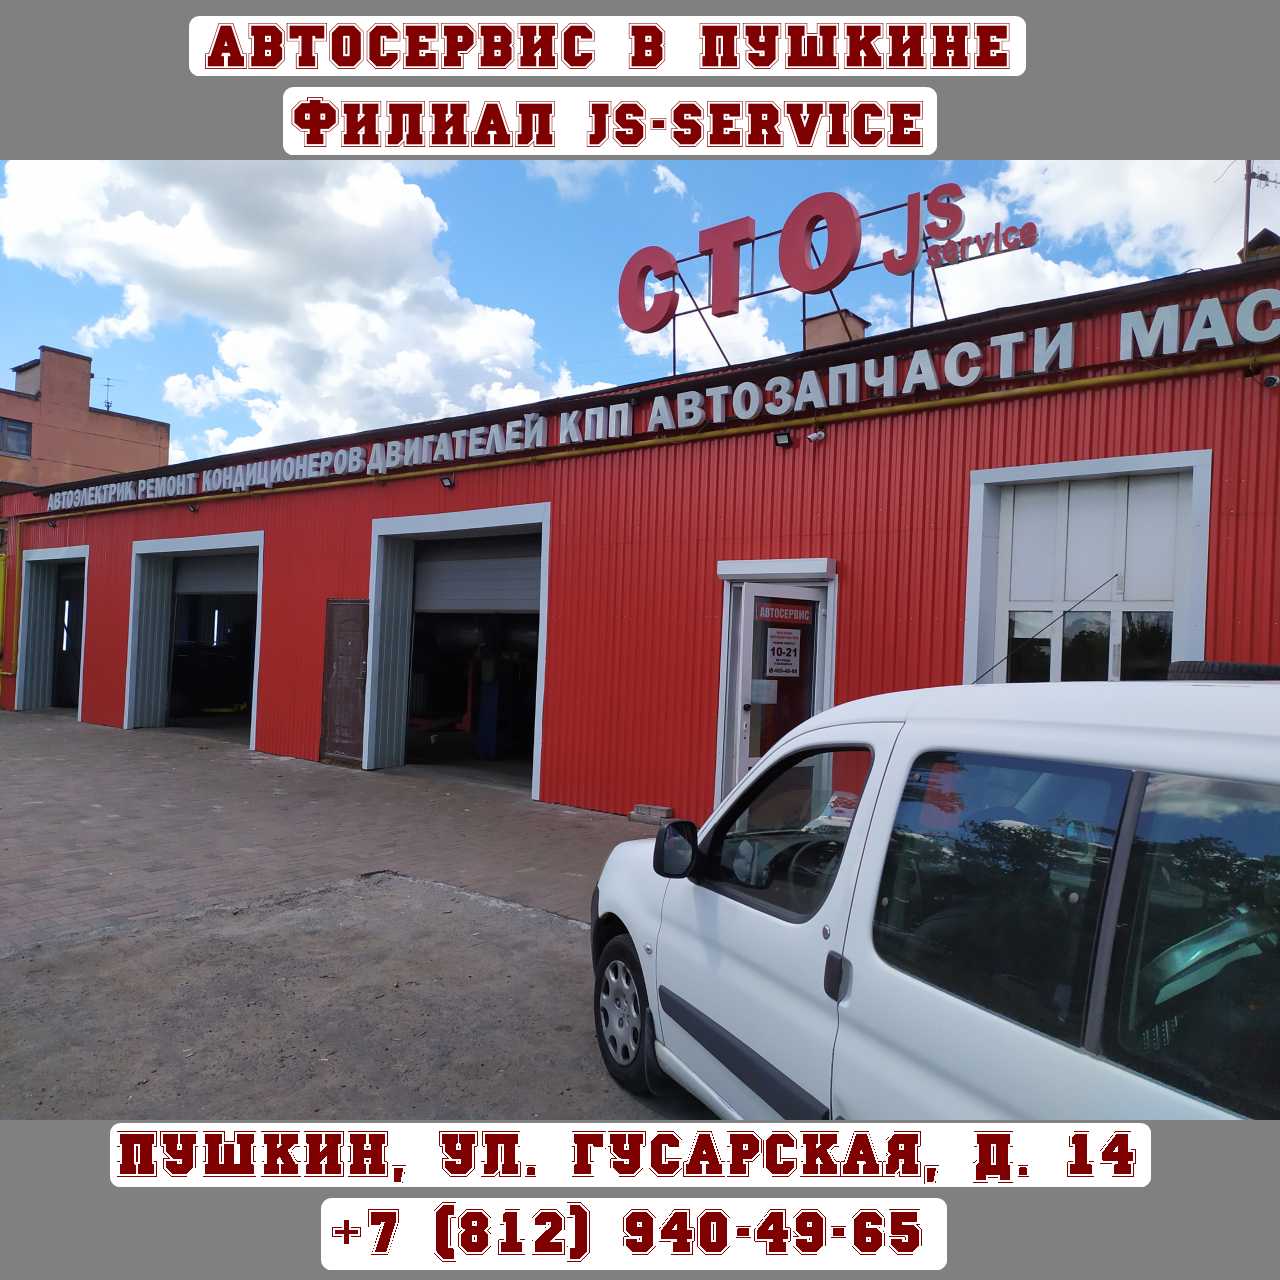 Автосервис JS-SERVICE в г. Пушкин, Гусарская улица, д. 14.